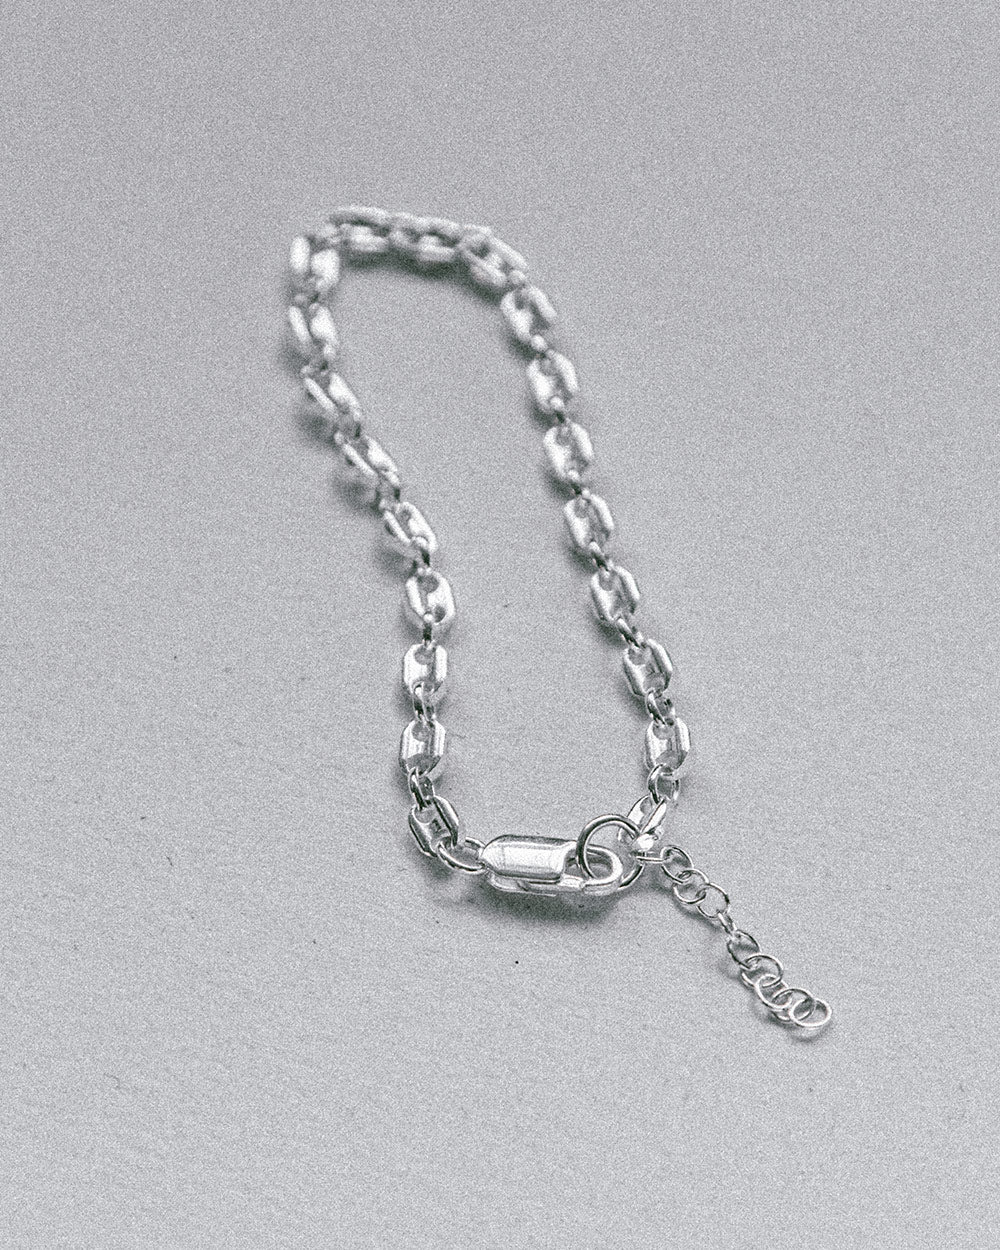 soft and sticky silver jewelry bracelet